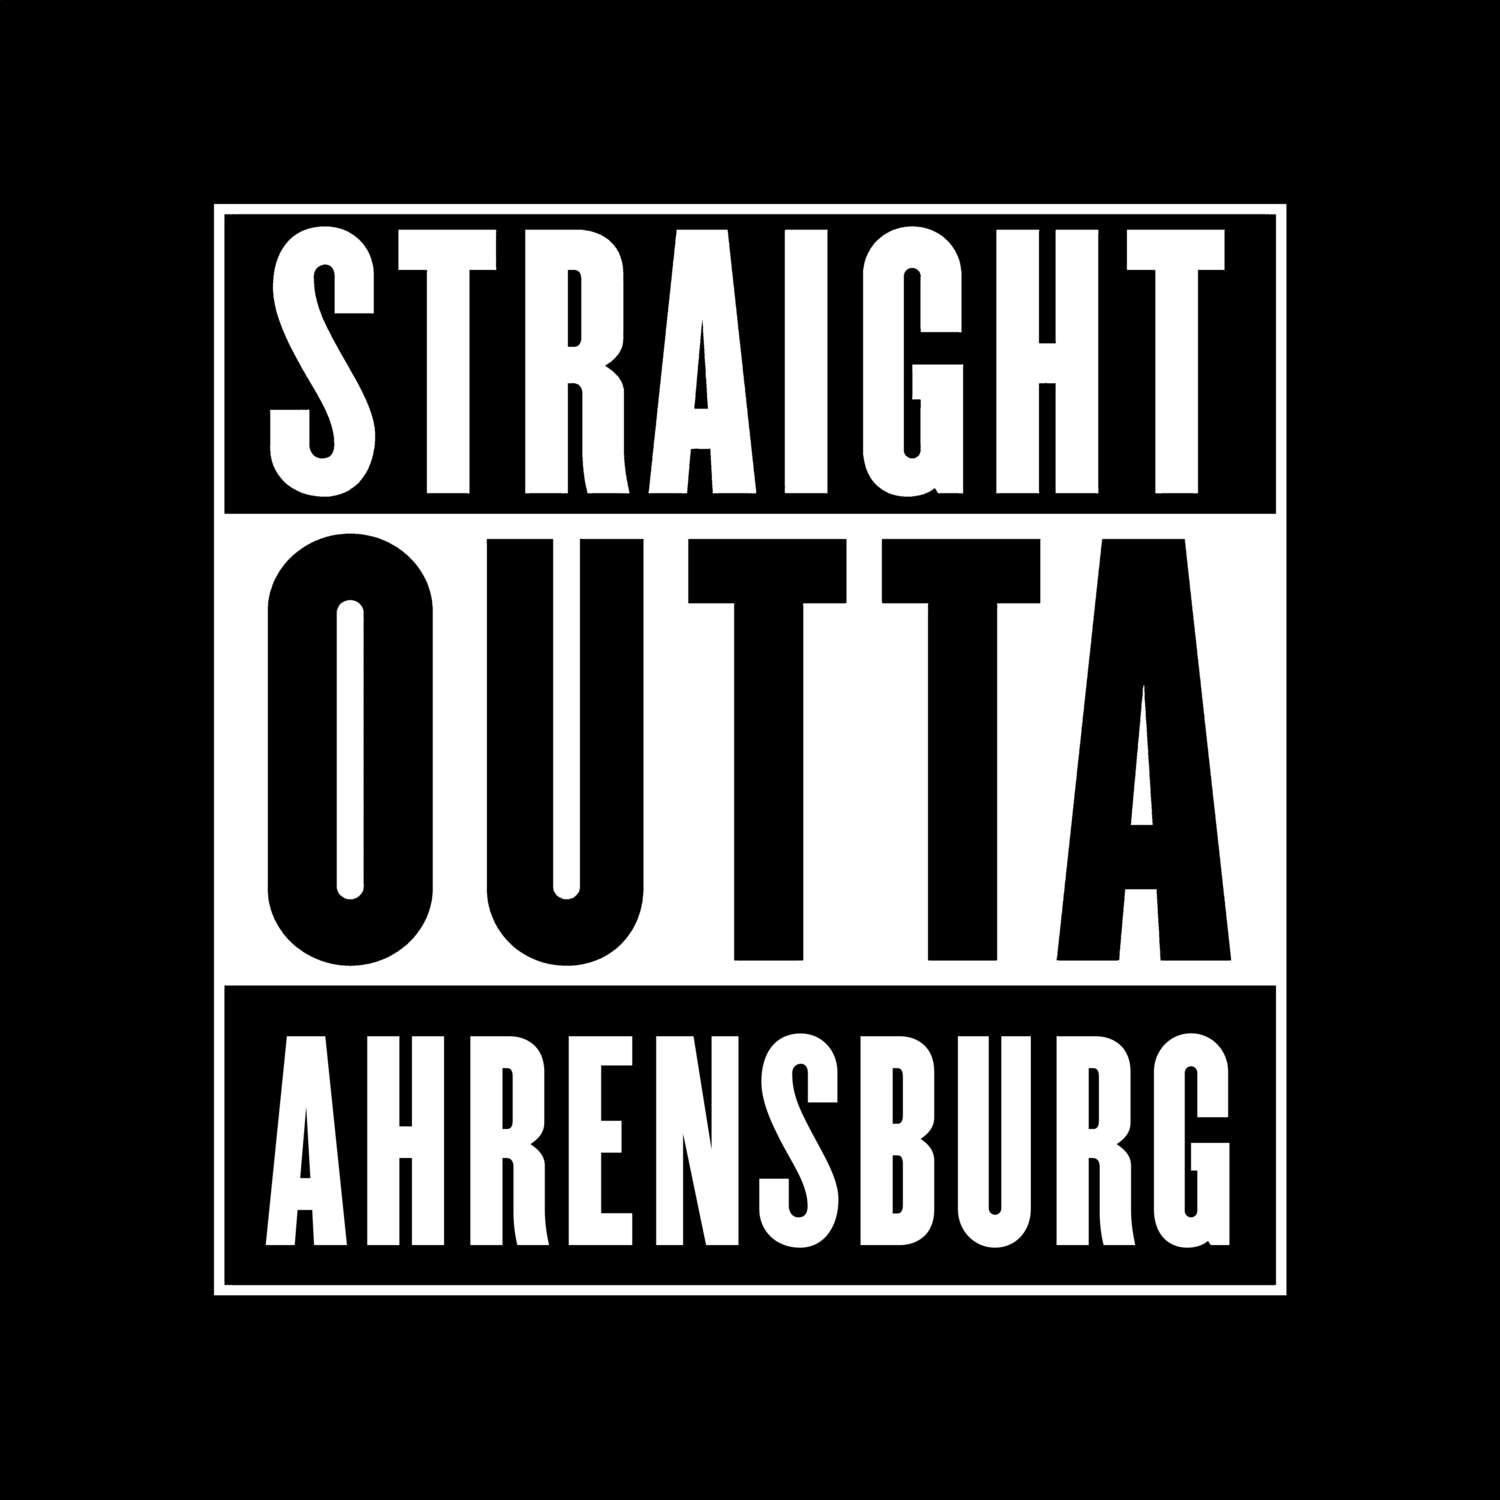 Ahrensburg T-Shirt »Straight Outta«